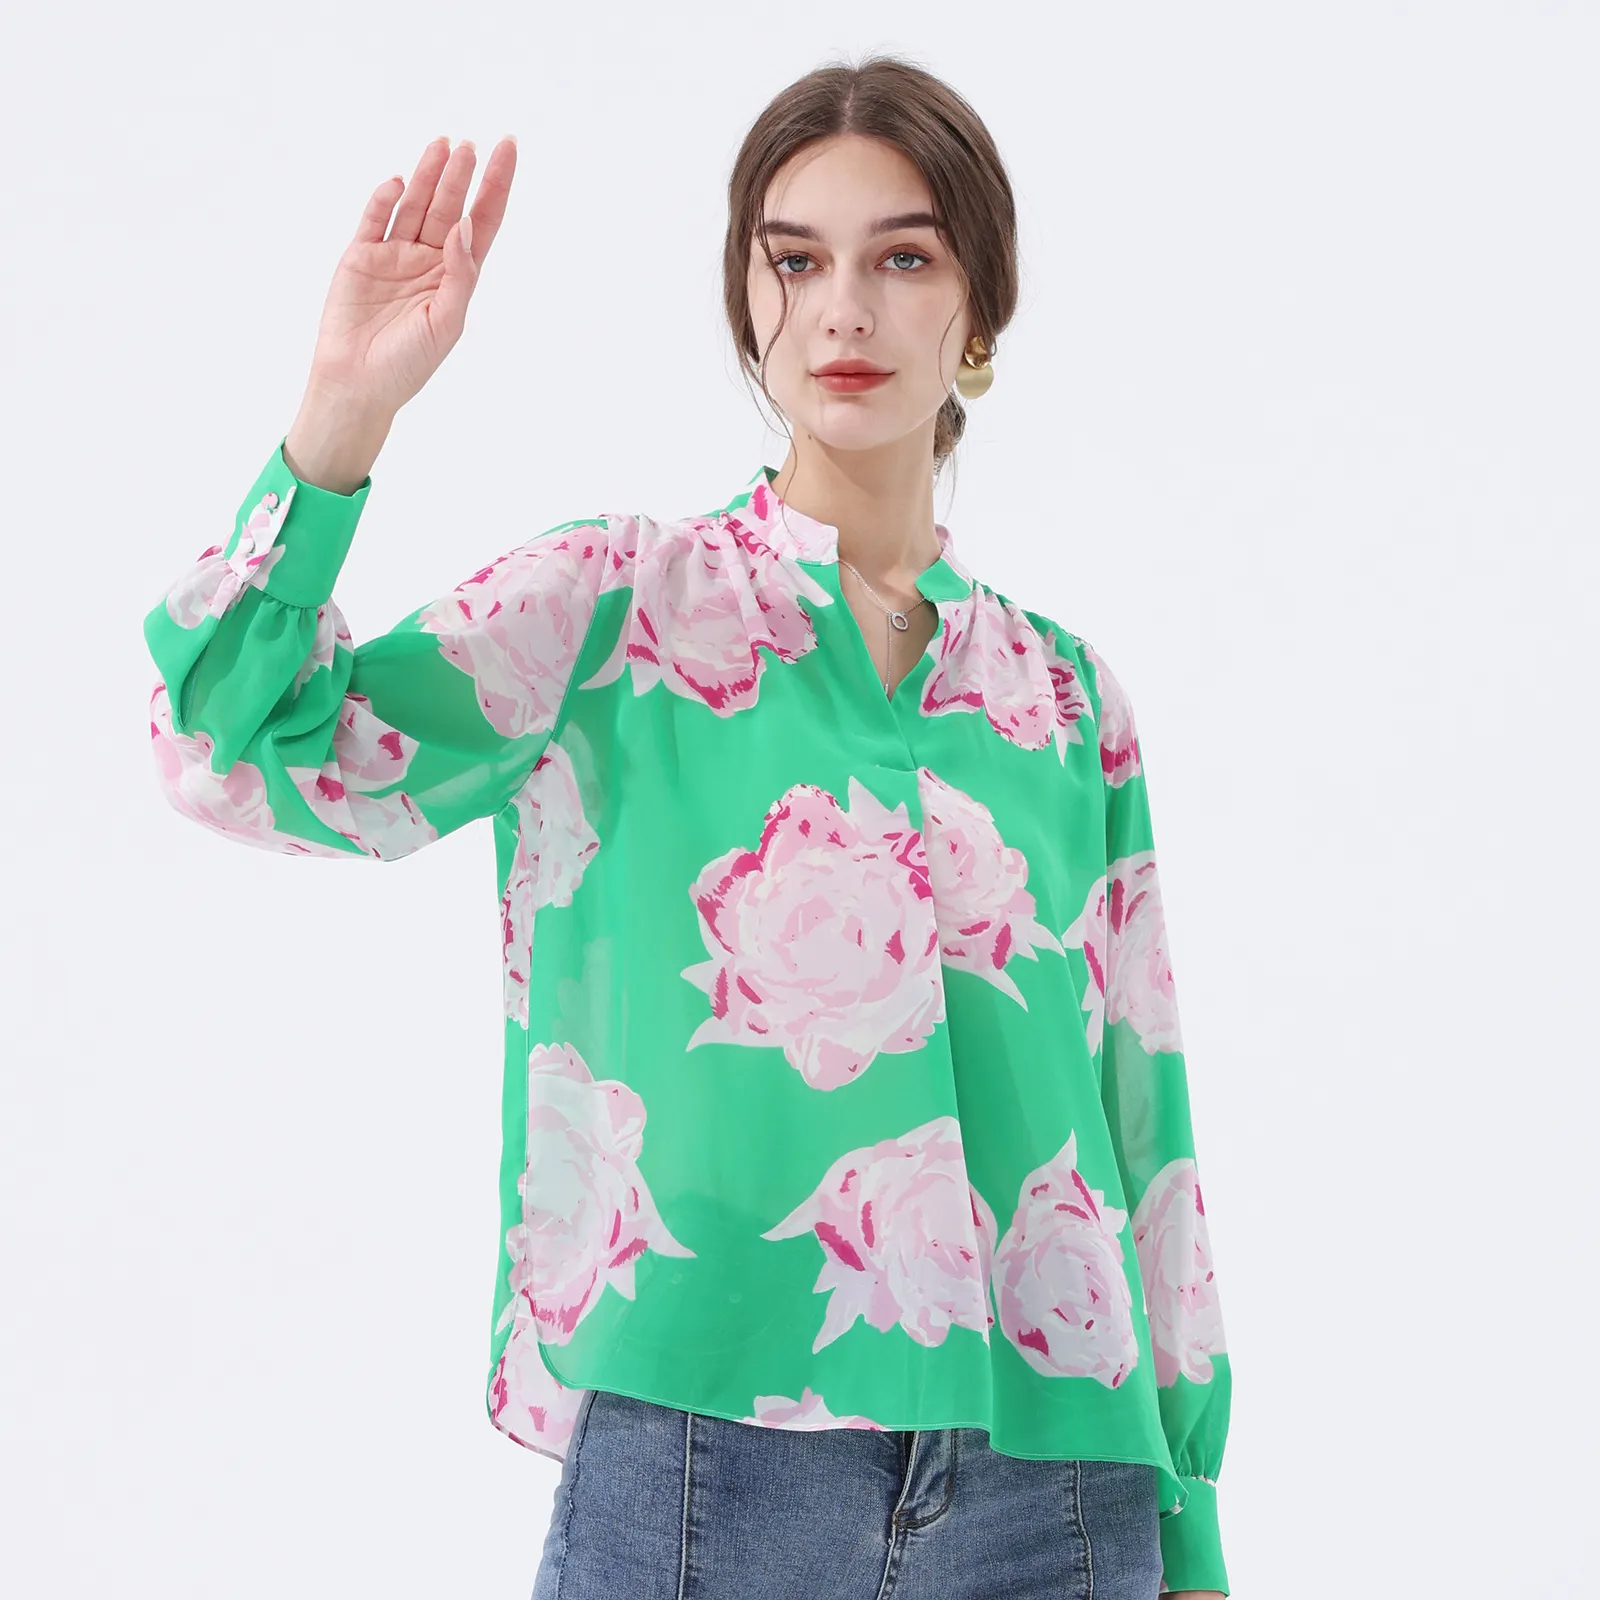 סיטונאי הגעה חדשה מזדמנים פרחים ירוקים חולצות רשמיות וחולצות לנשים